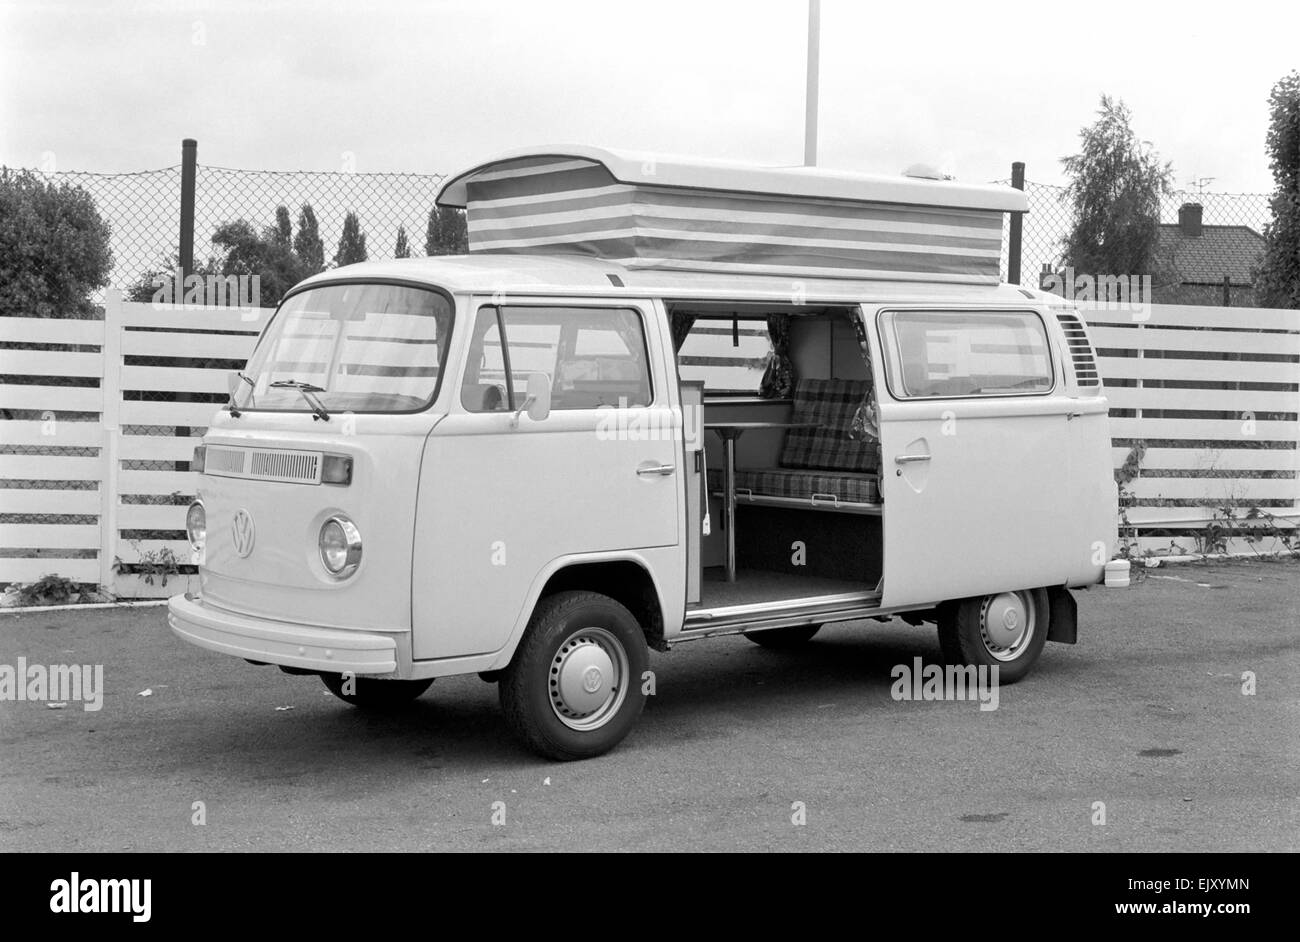 Volkswagen Devon Moonraker motor caravan. August 1978 78-3944-002 *** Local Caption *** planman -  - 03/02/2010 Stock Photo